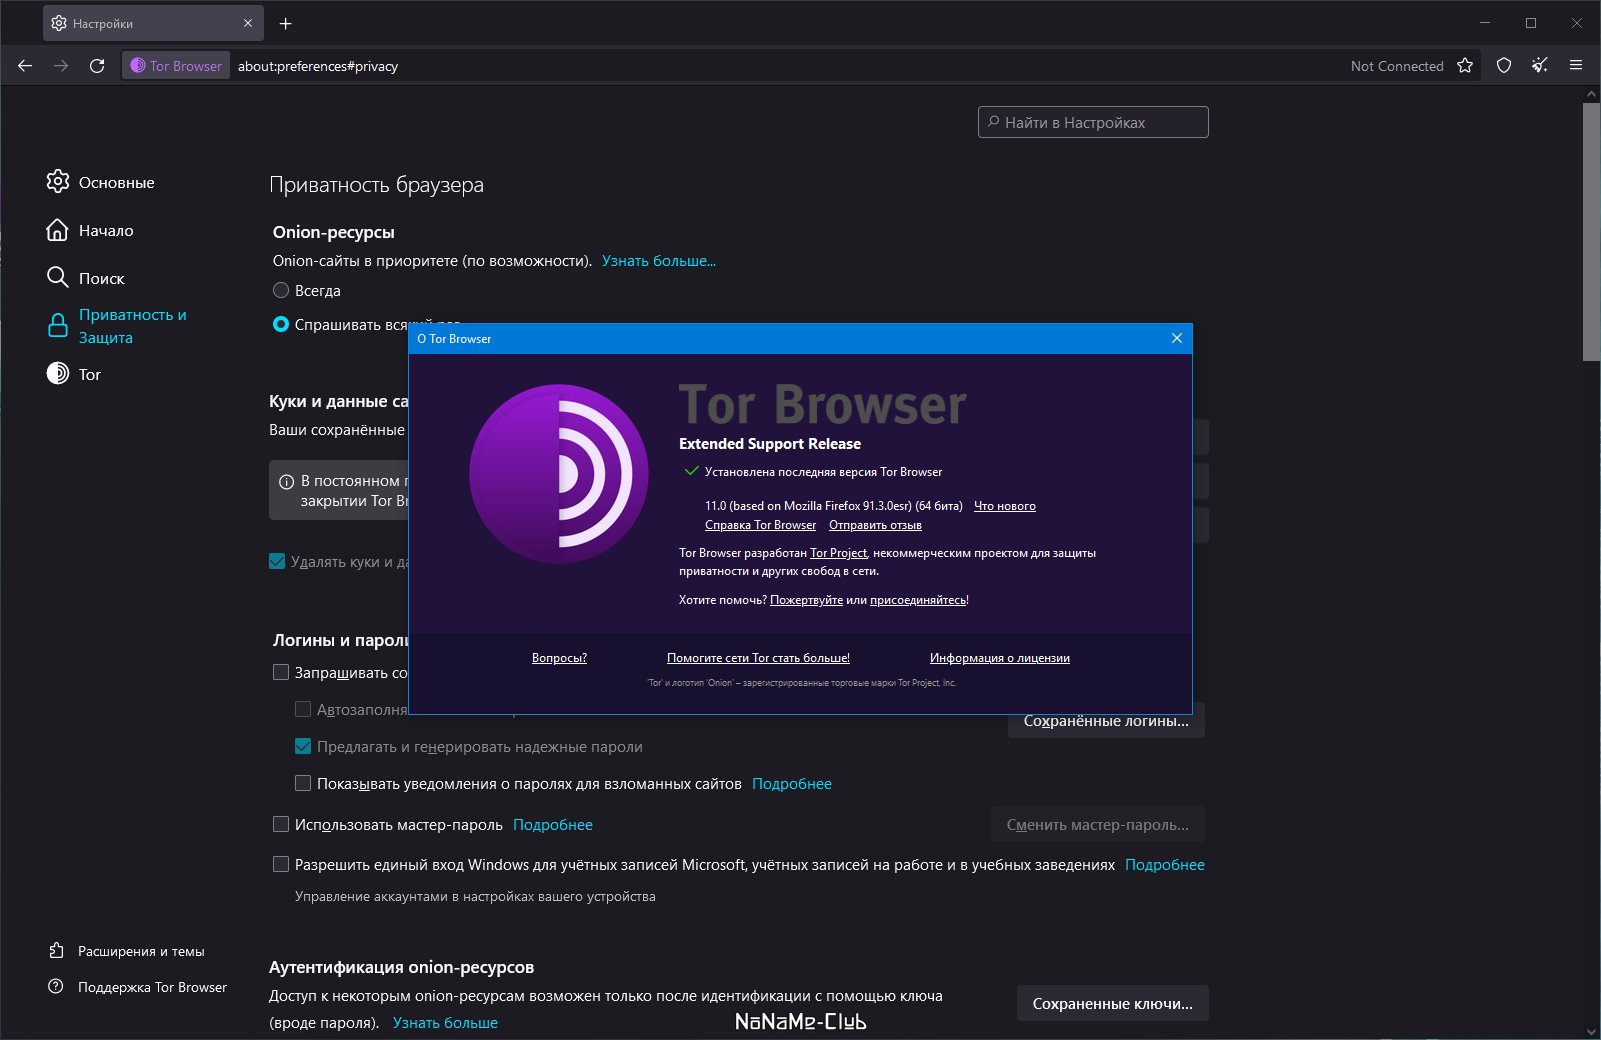 Tor browser bundle portable torrent mega darknet suchmaschinen mega